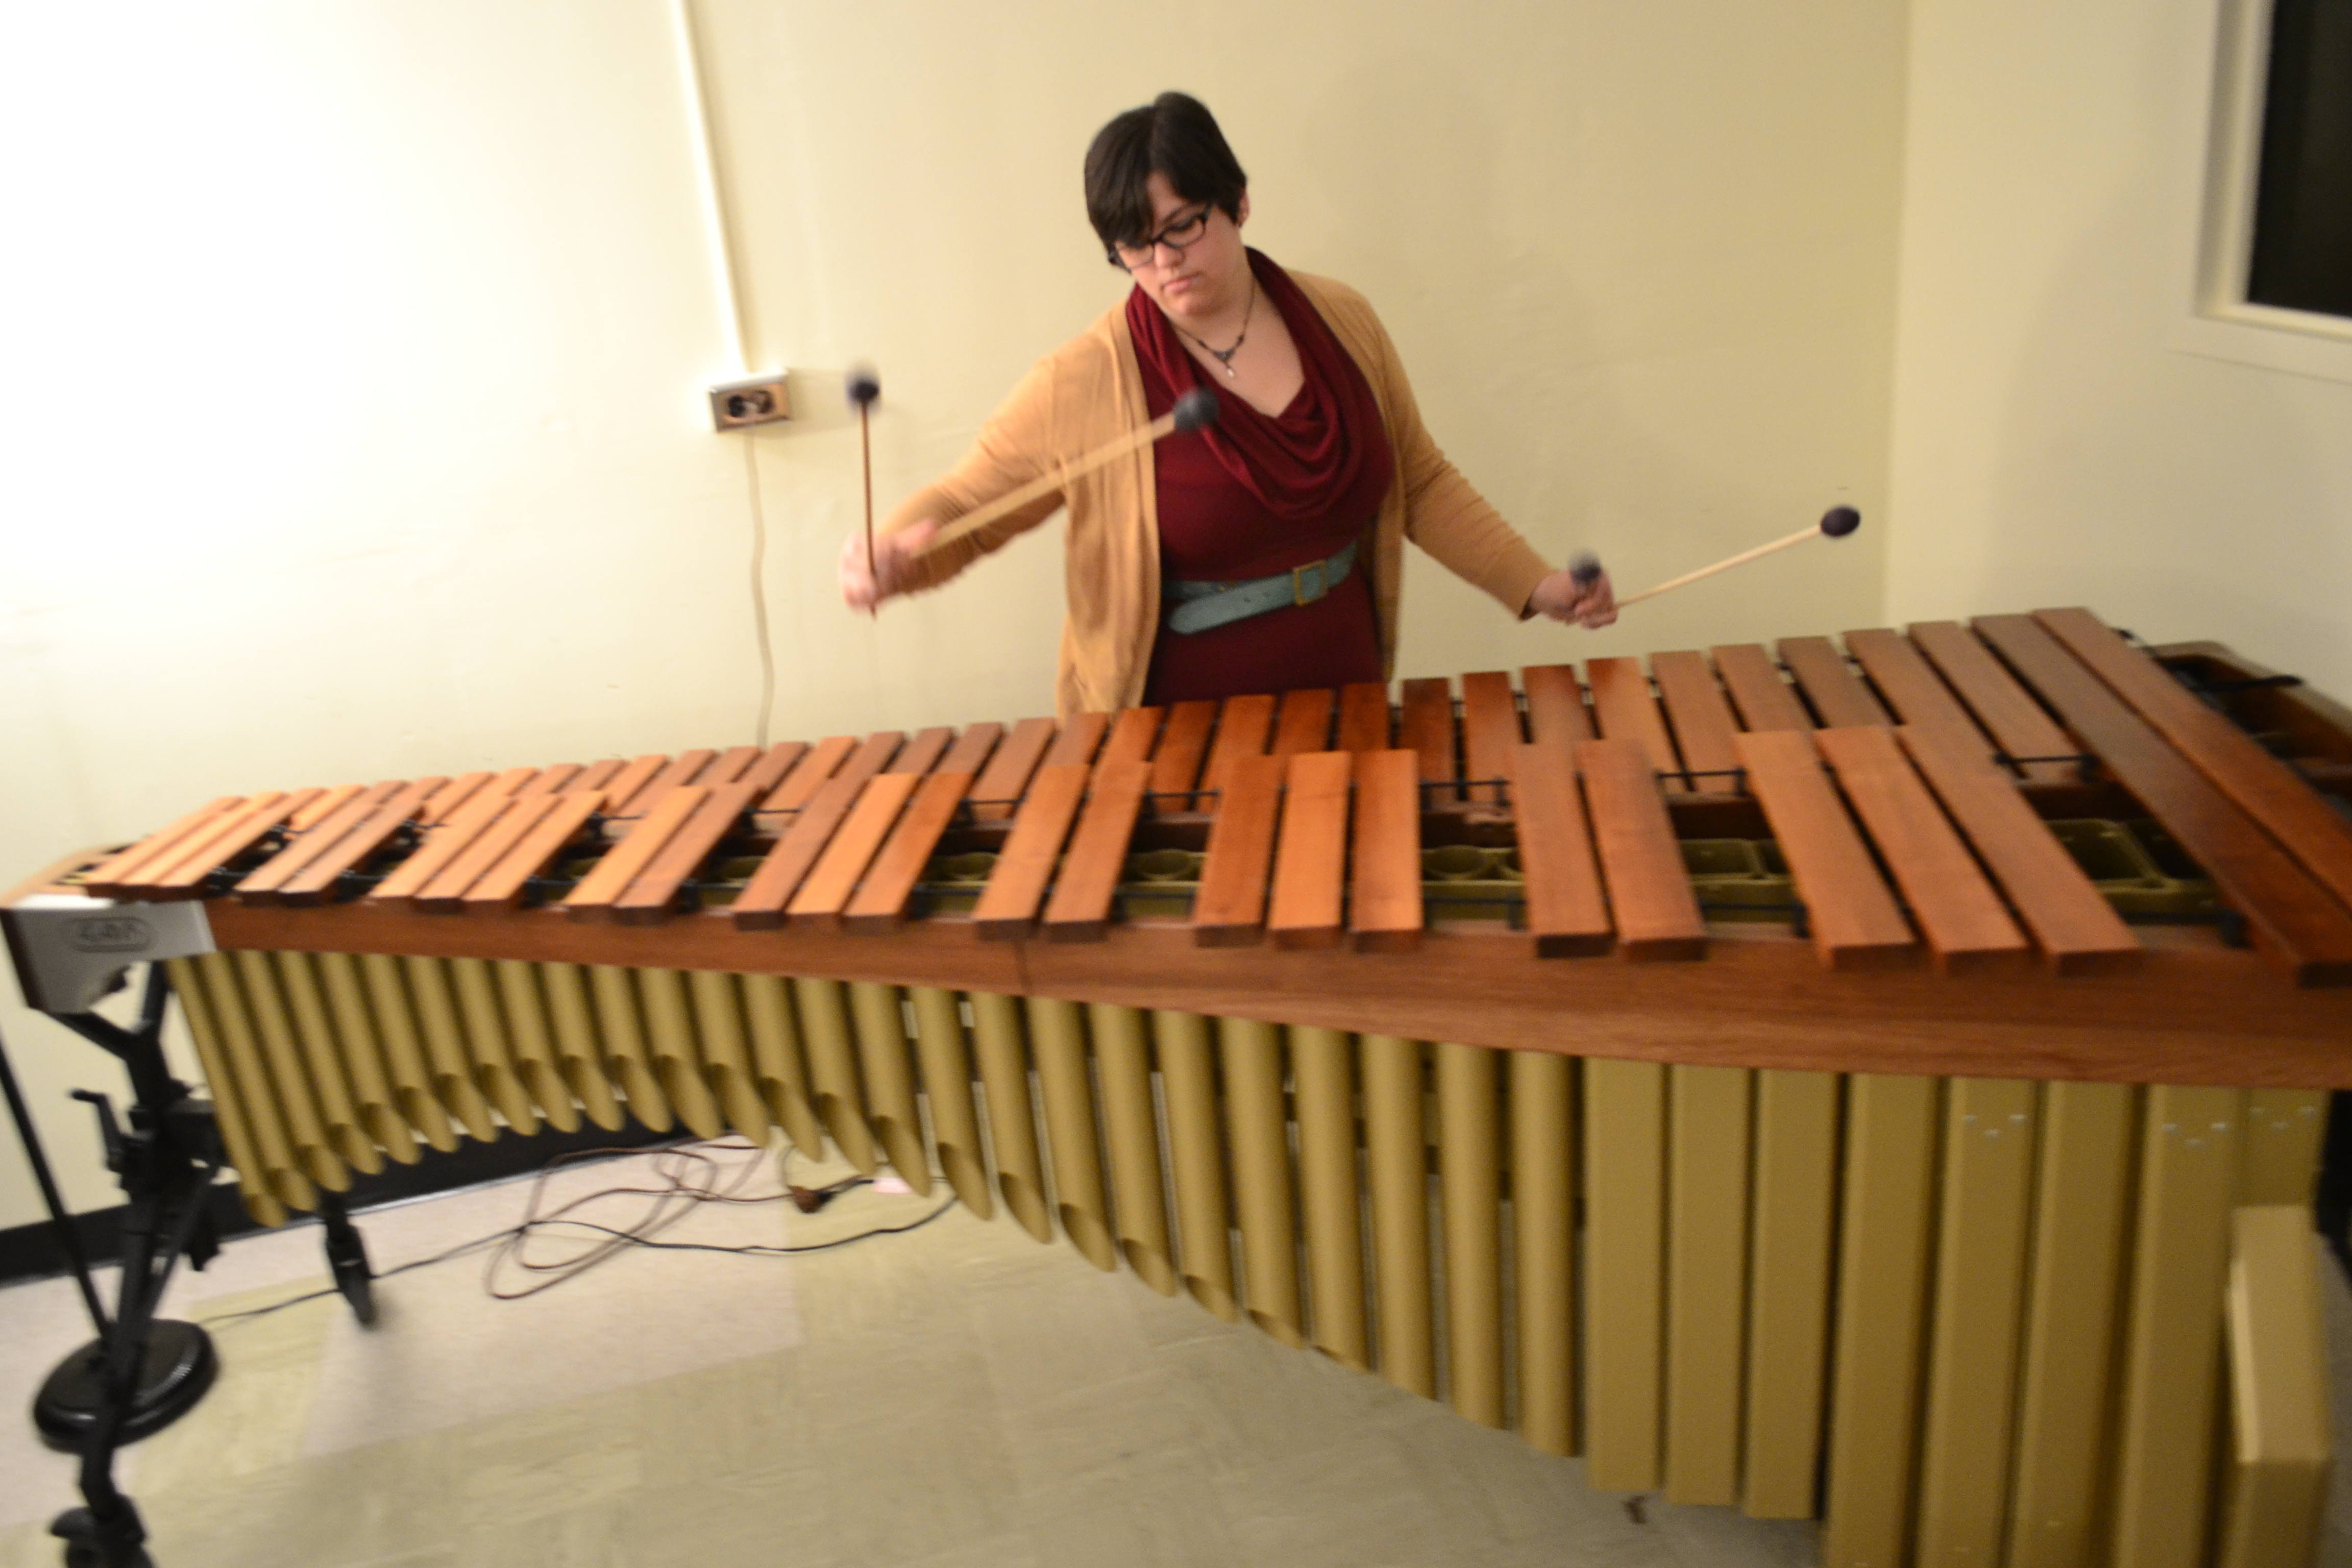 msu percussion studio required mallets